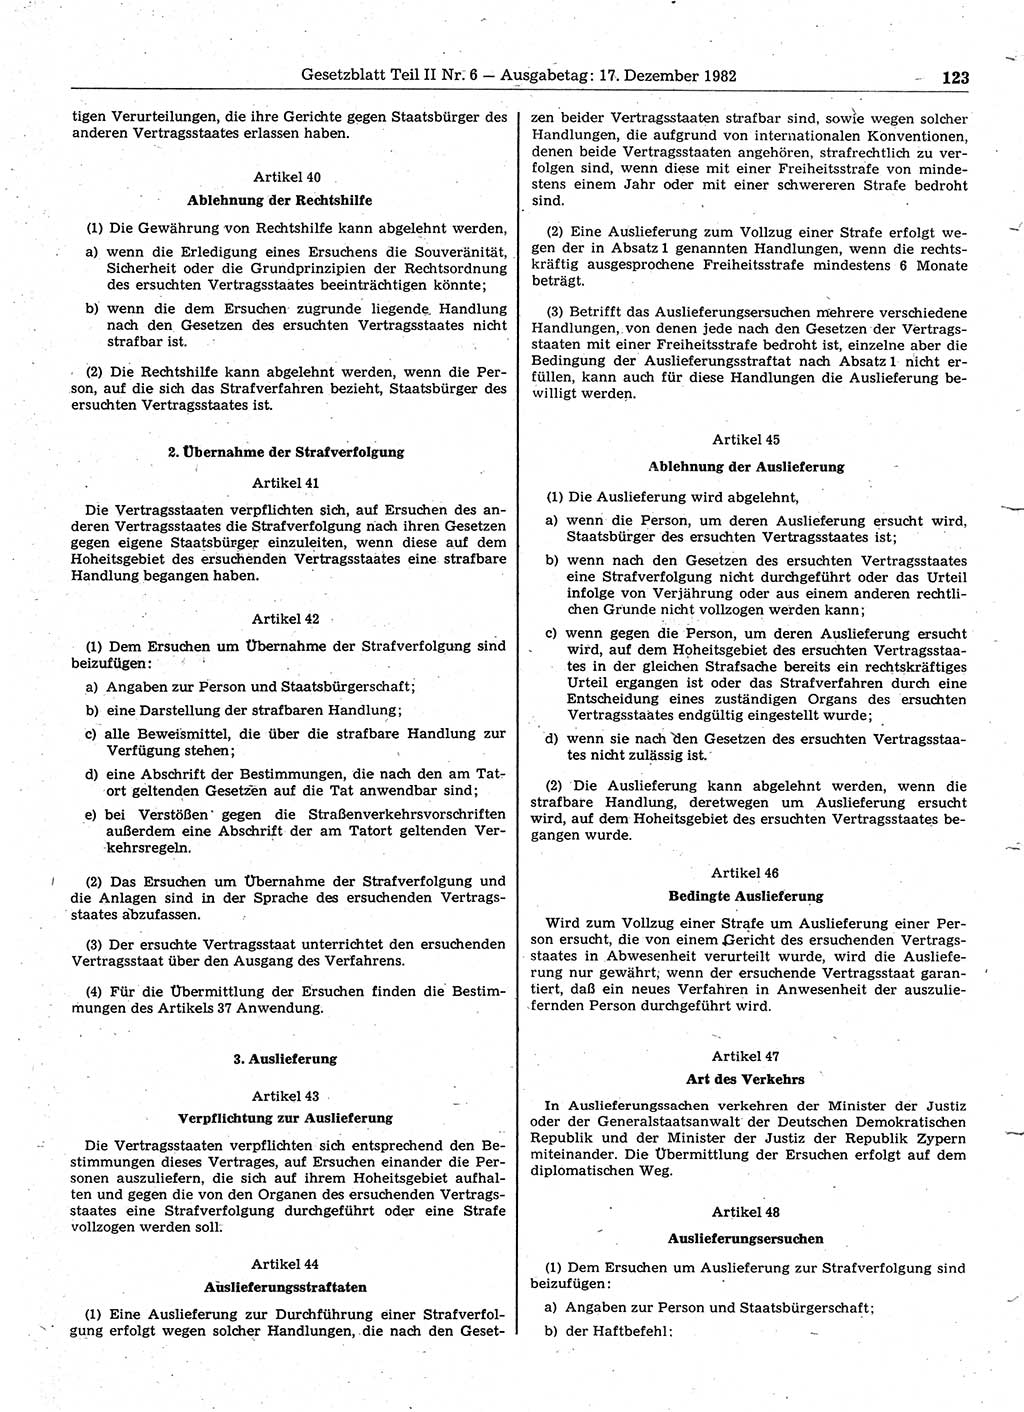 Gesetzblatt (GBl.) der Deutschen Demokratischen Republik (DDR) Teil ⅠⅠ 1982, Seite 123 (GBl. DDR ⅠⅠ 1982, S. 123)